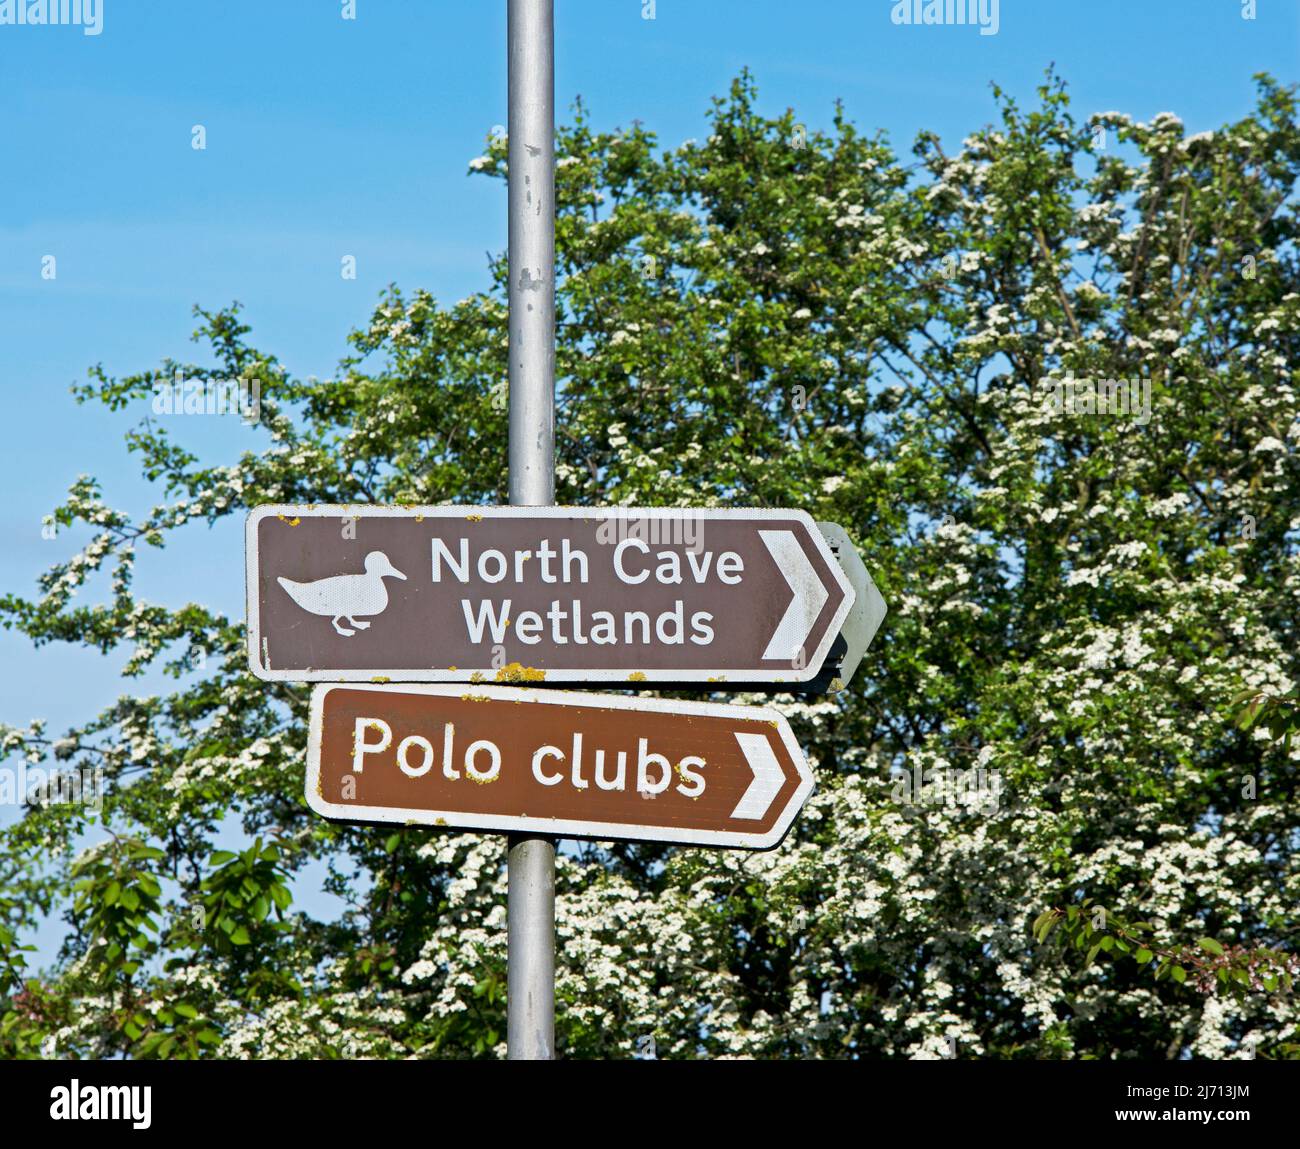 Melden Sie sich in North Cave für North Cave Wetlands und Polo Clubs, East Yorkshire, England an Stockfoto